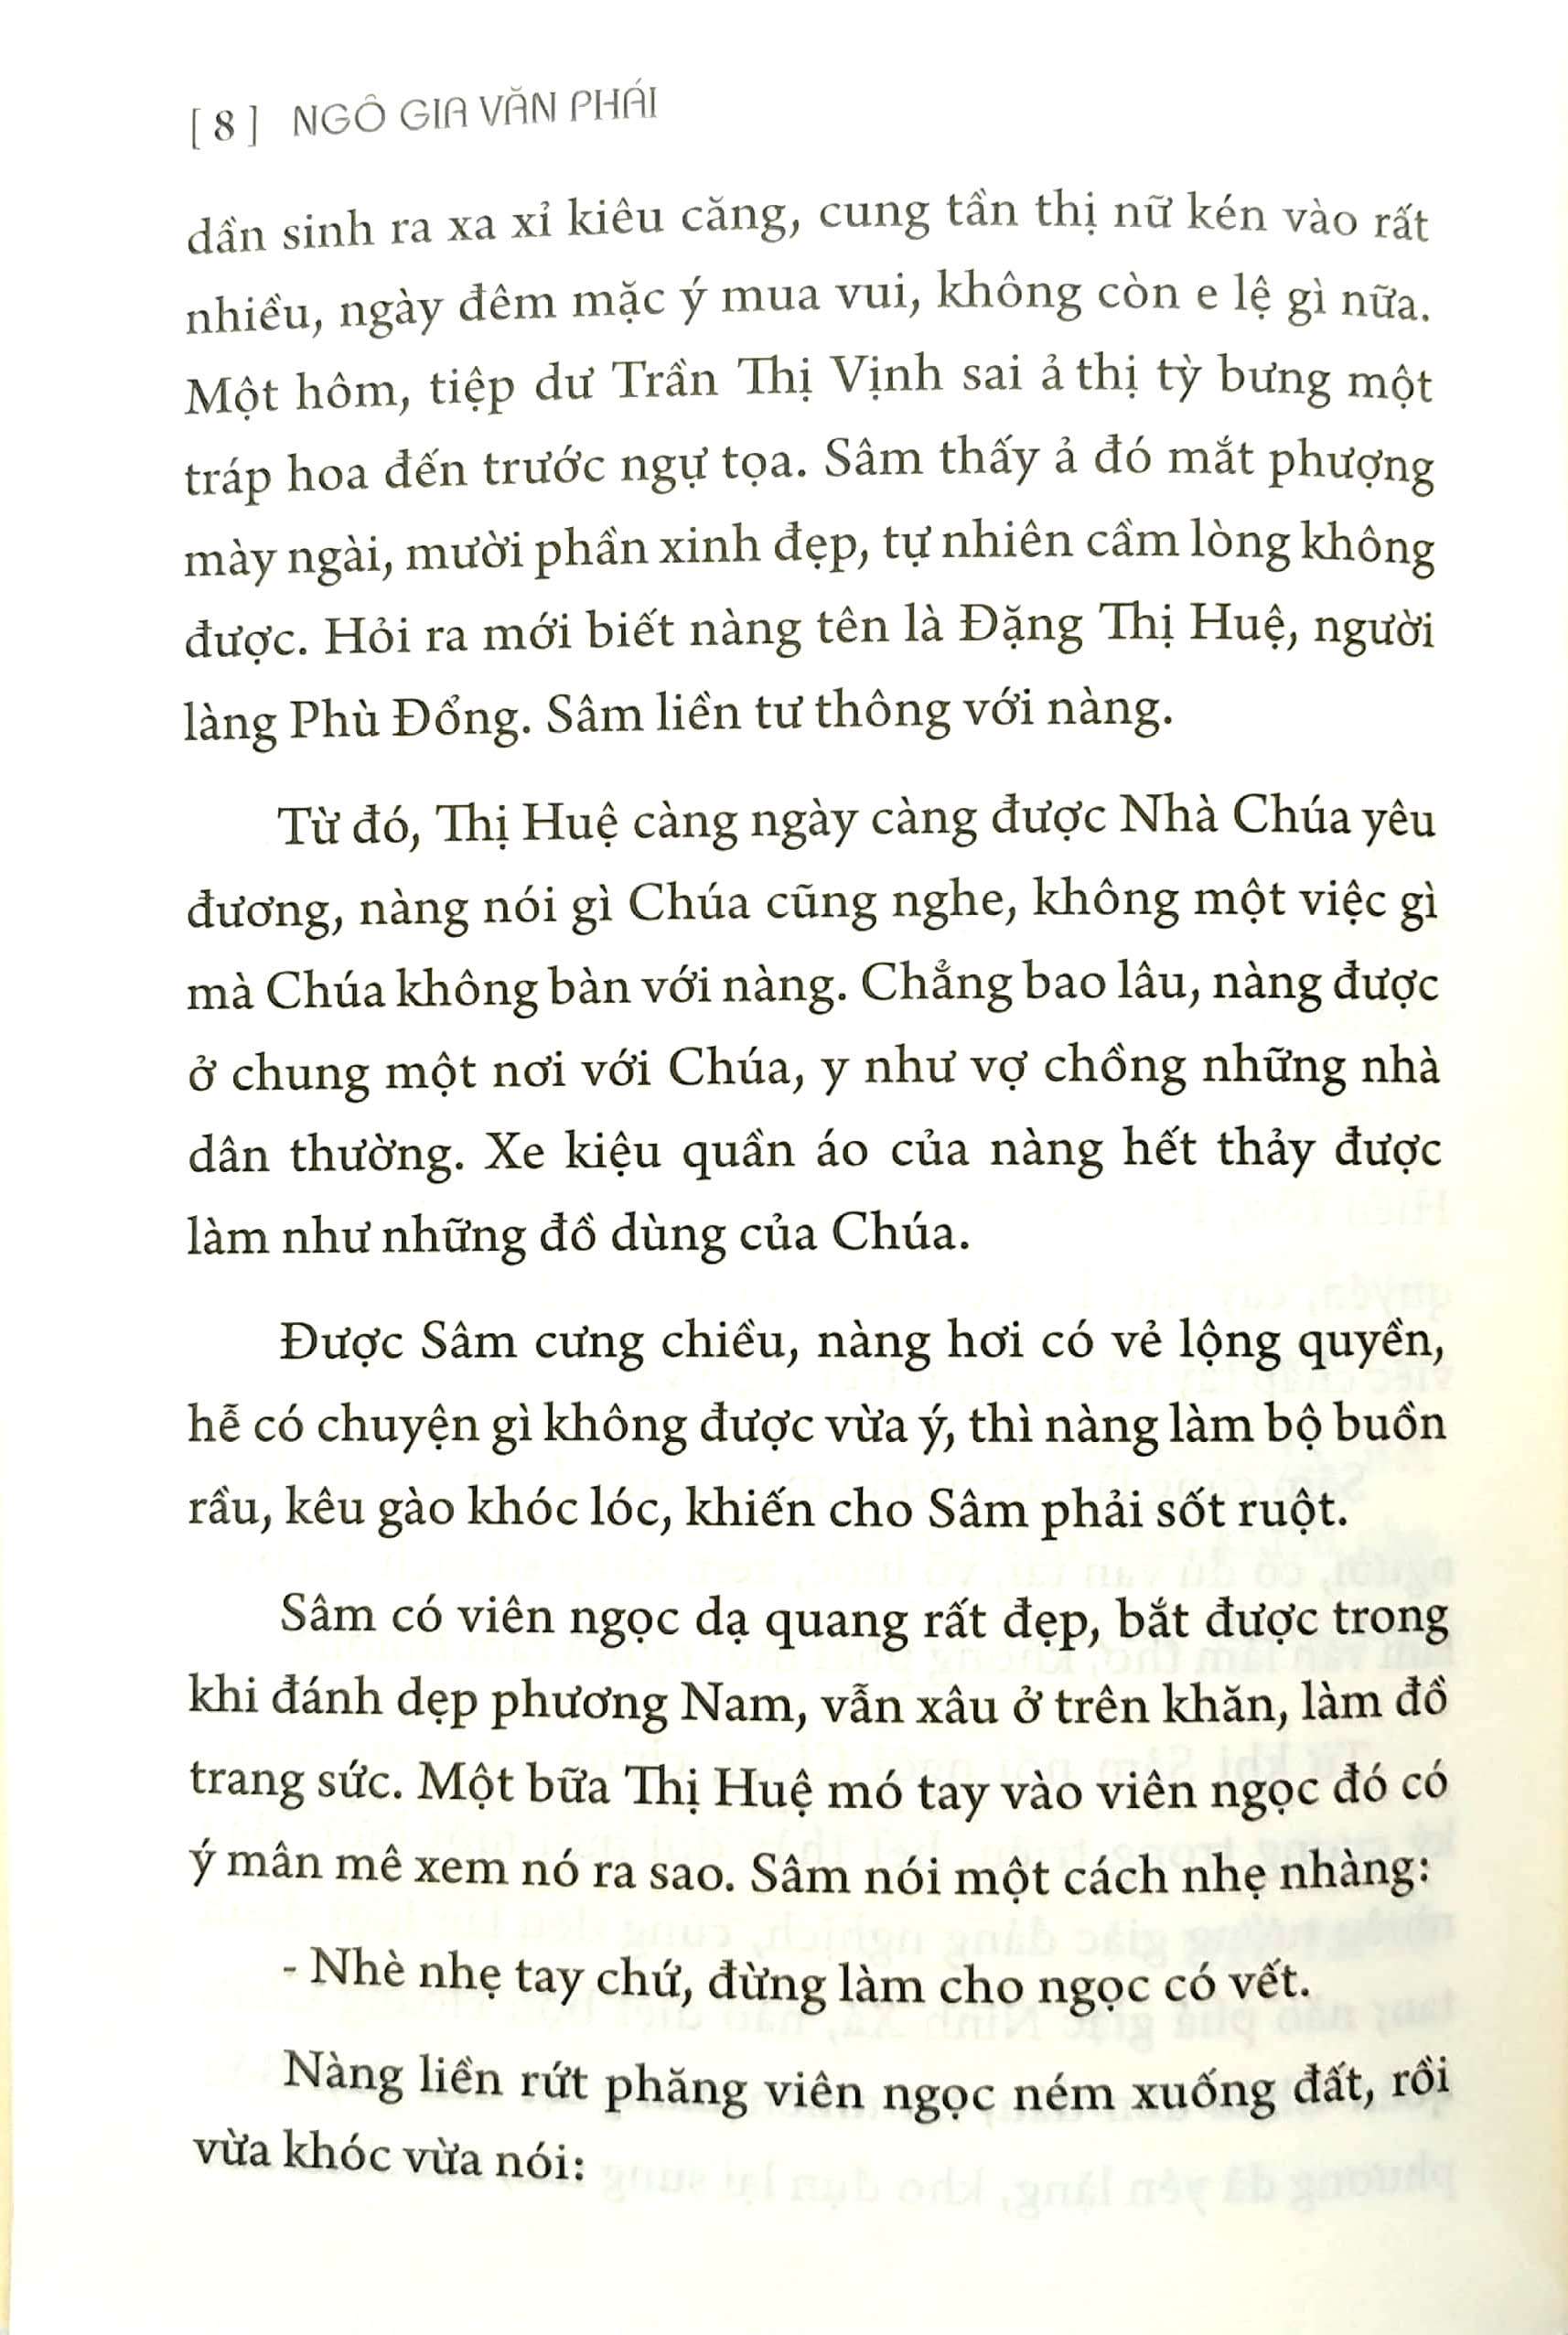 Hoàng Lê Nhất Thống Trí PDF